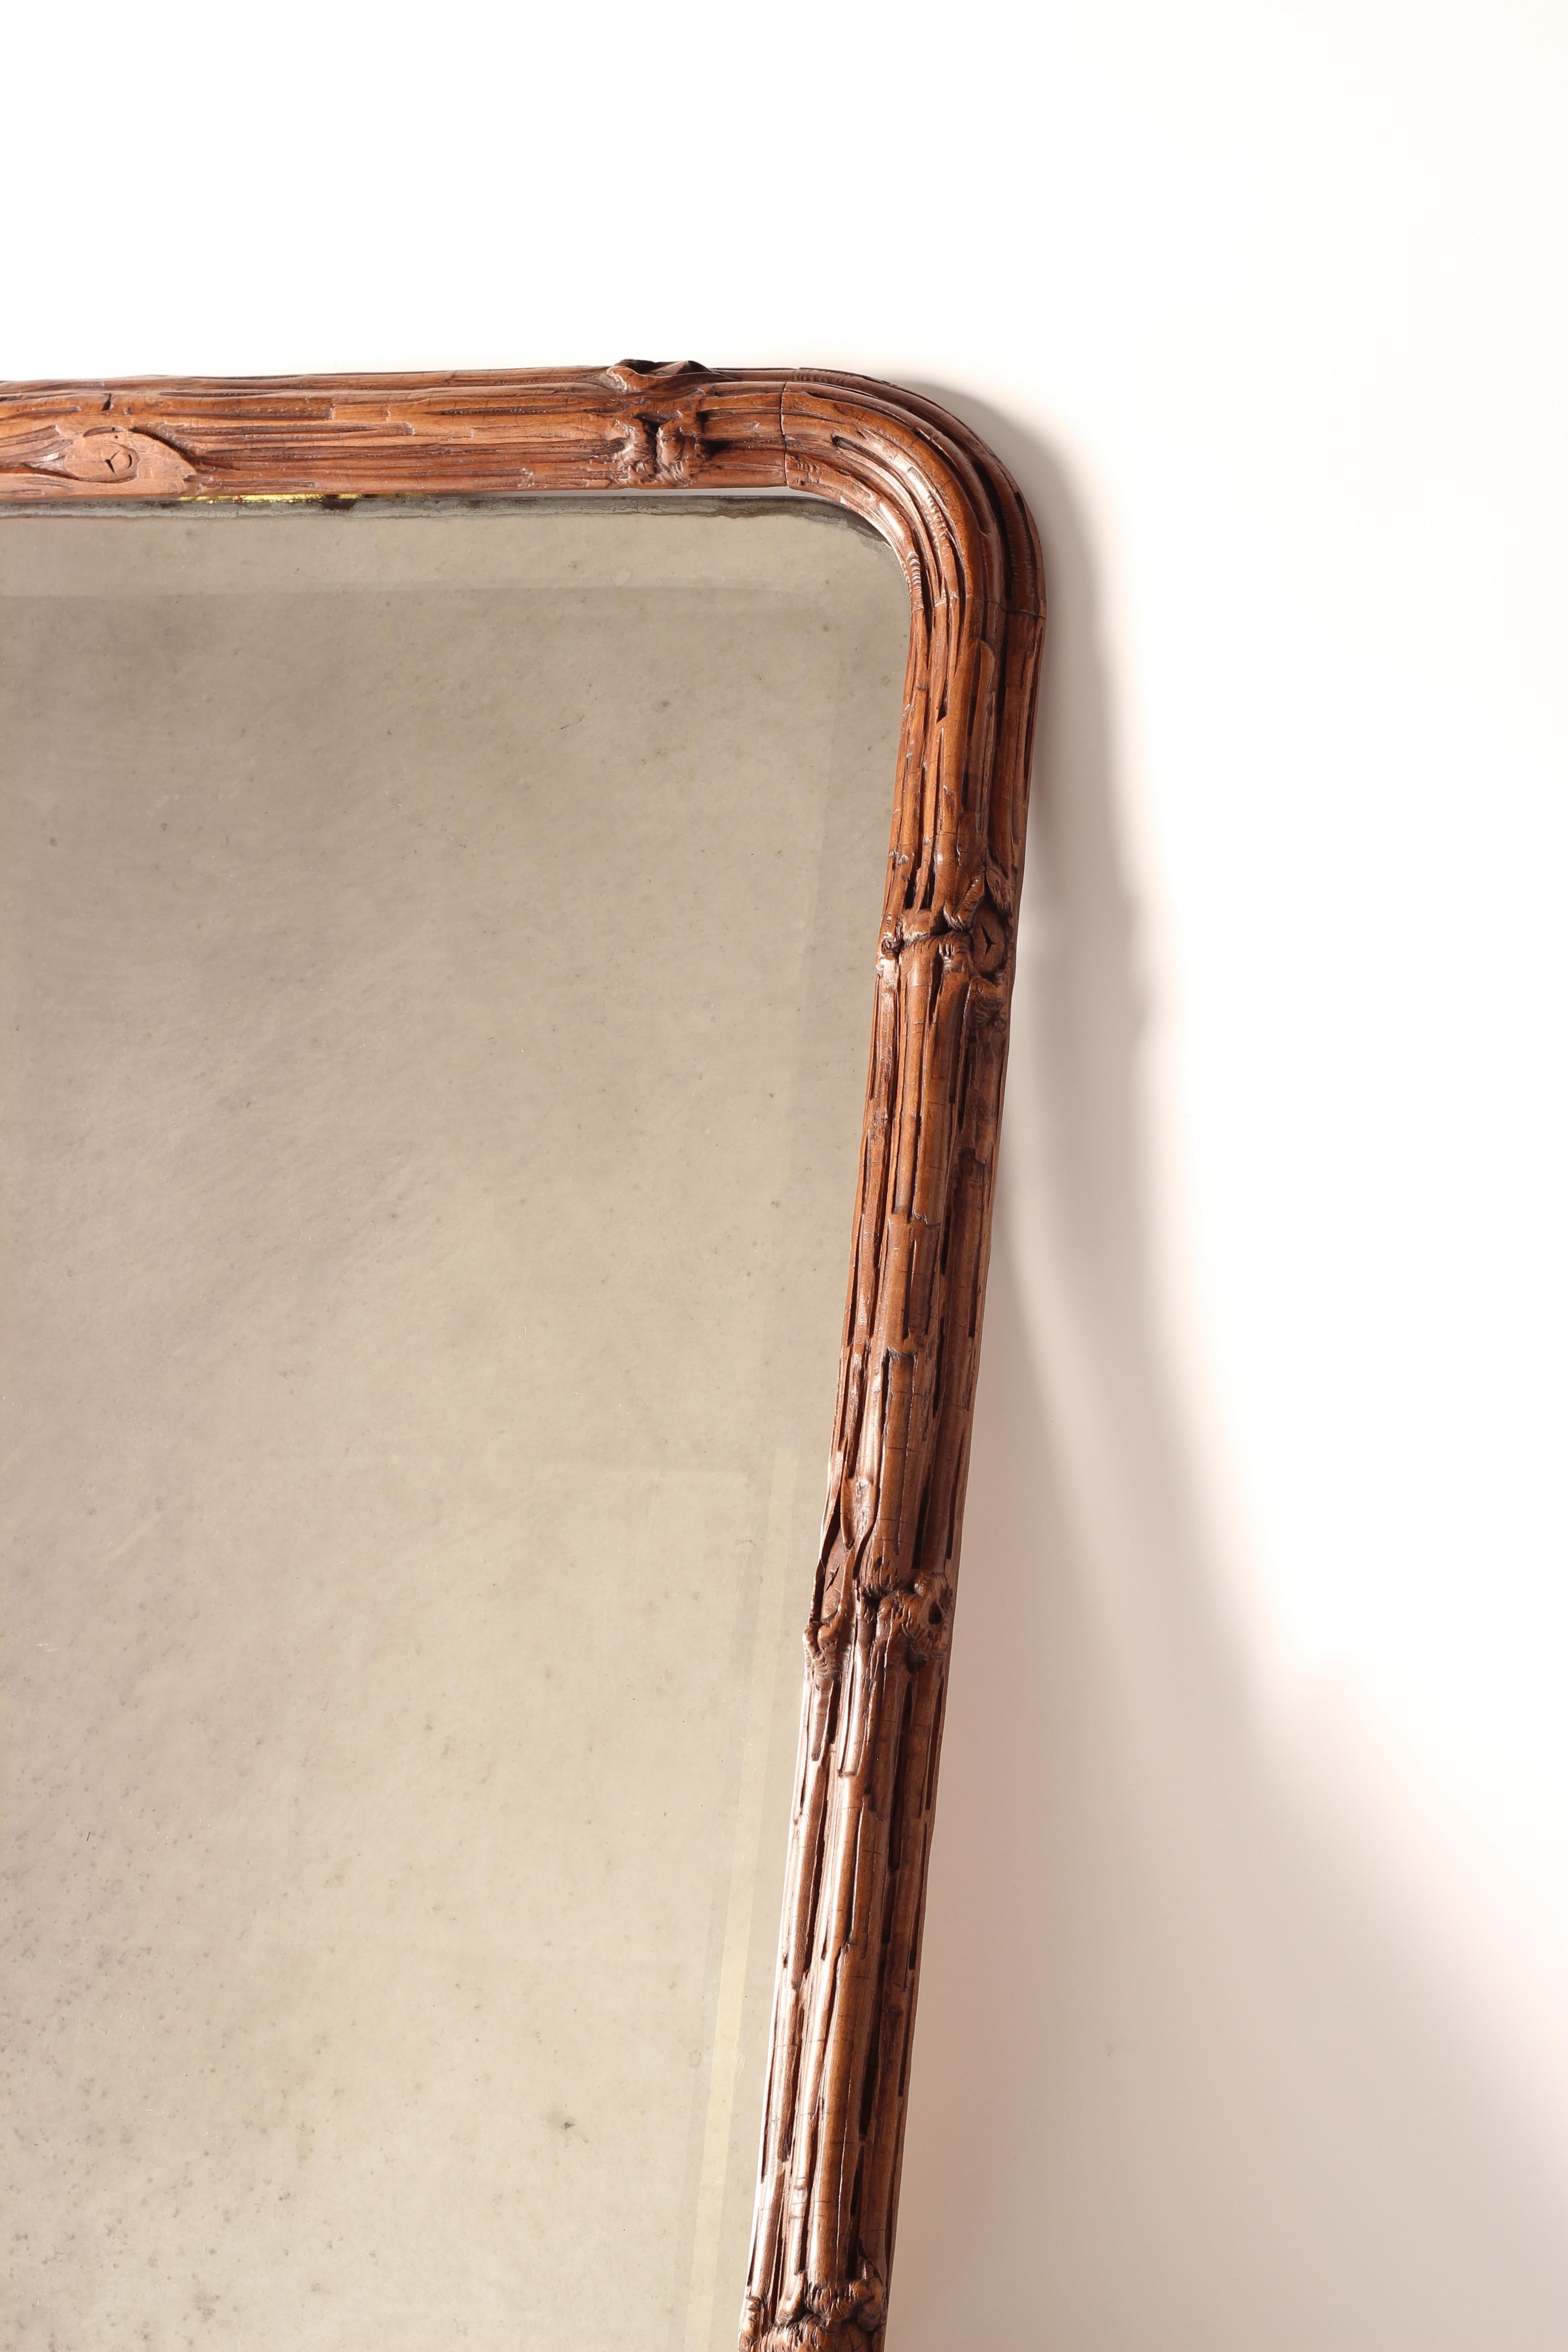 Il s'agit d'une paire de magnifiques miroirs incroyablement bien sculptés, qui reproduisent une bordure de branches s'enroulant autour d'un miroir original biseauté et incurvé. La sculpture est en très bon état d'origine, le miroir ne présentant